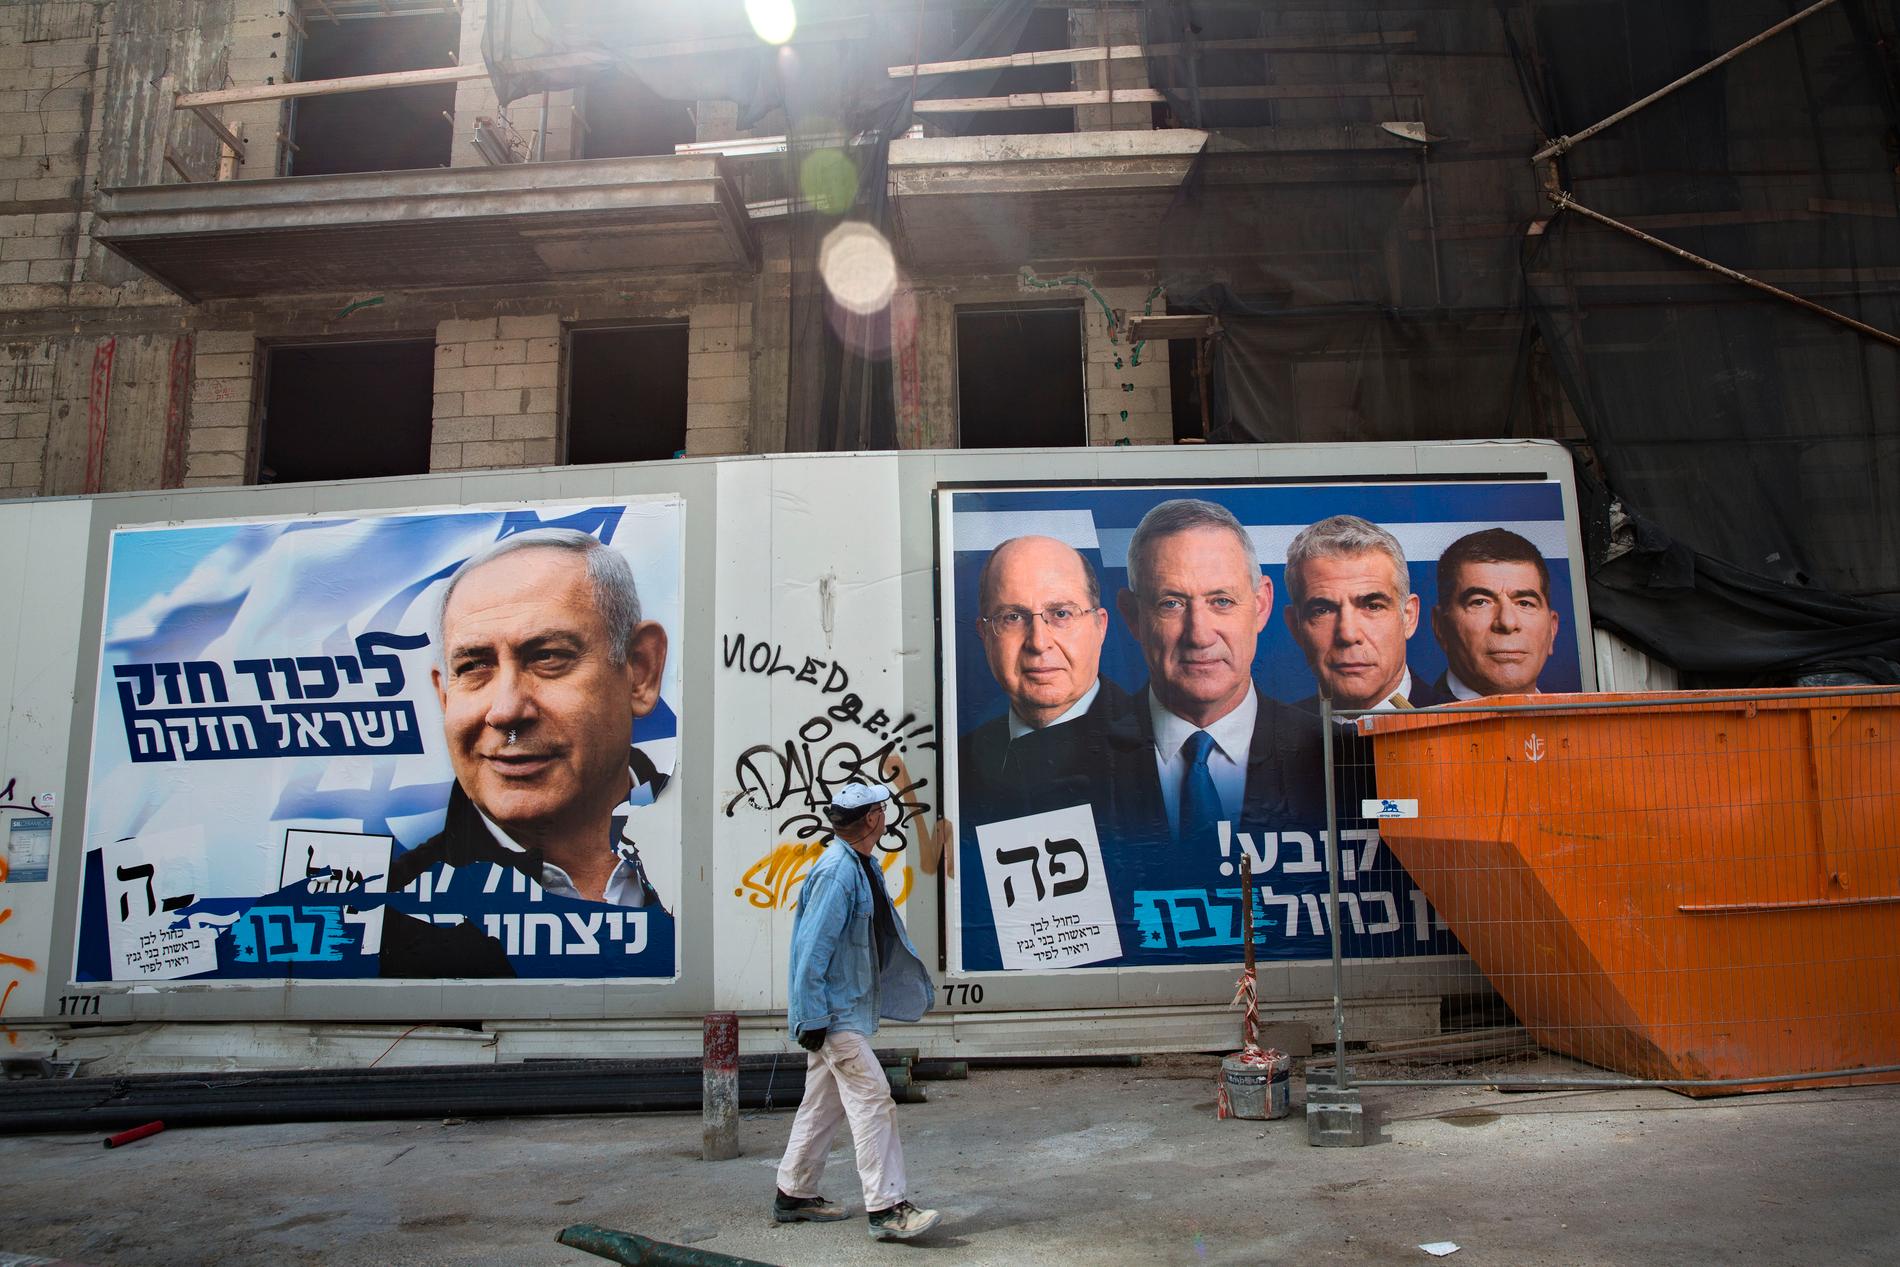 Till vänster en valaffisch av Benjamin Netanyahu, Till höger Benny Gantz med företrädare från Blåvita alliansen.